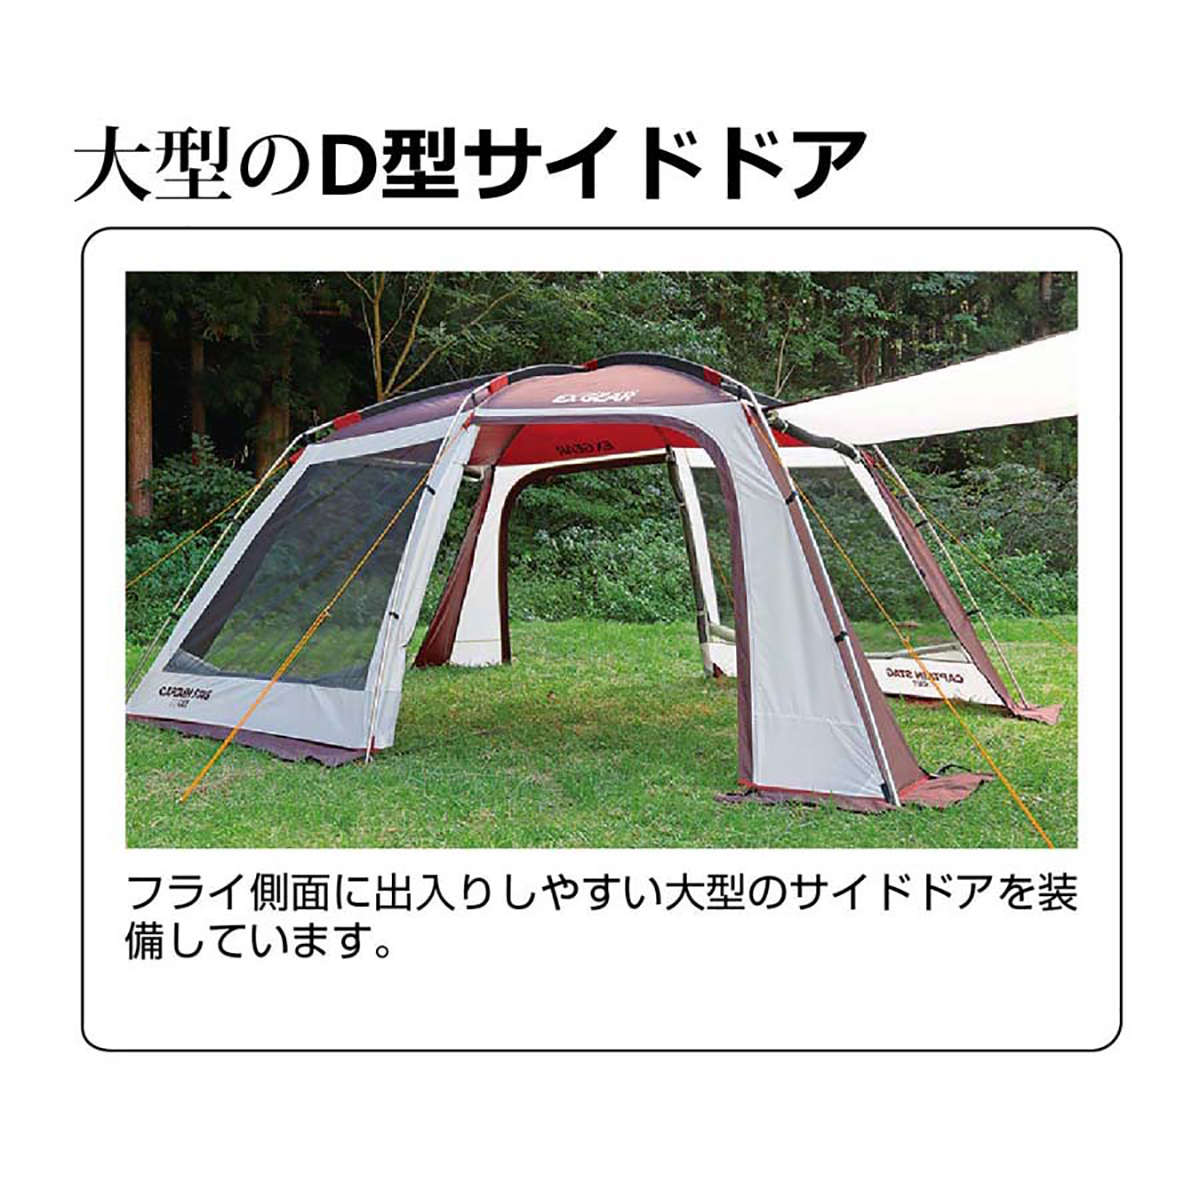 エクスギア スクリーンツールームドーム - アウトドア・キャンプ用品